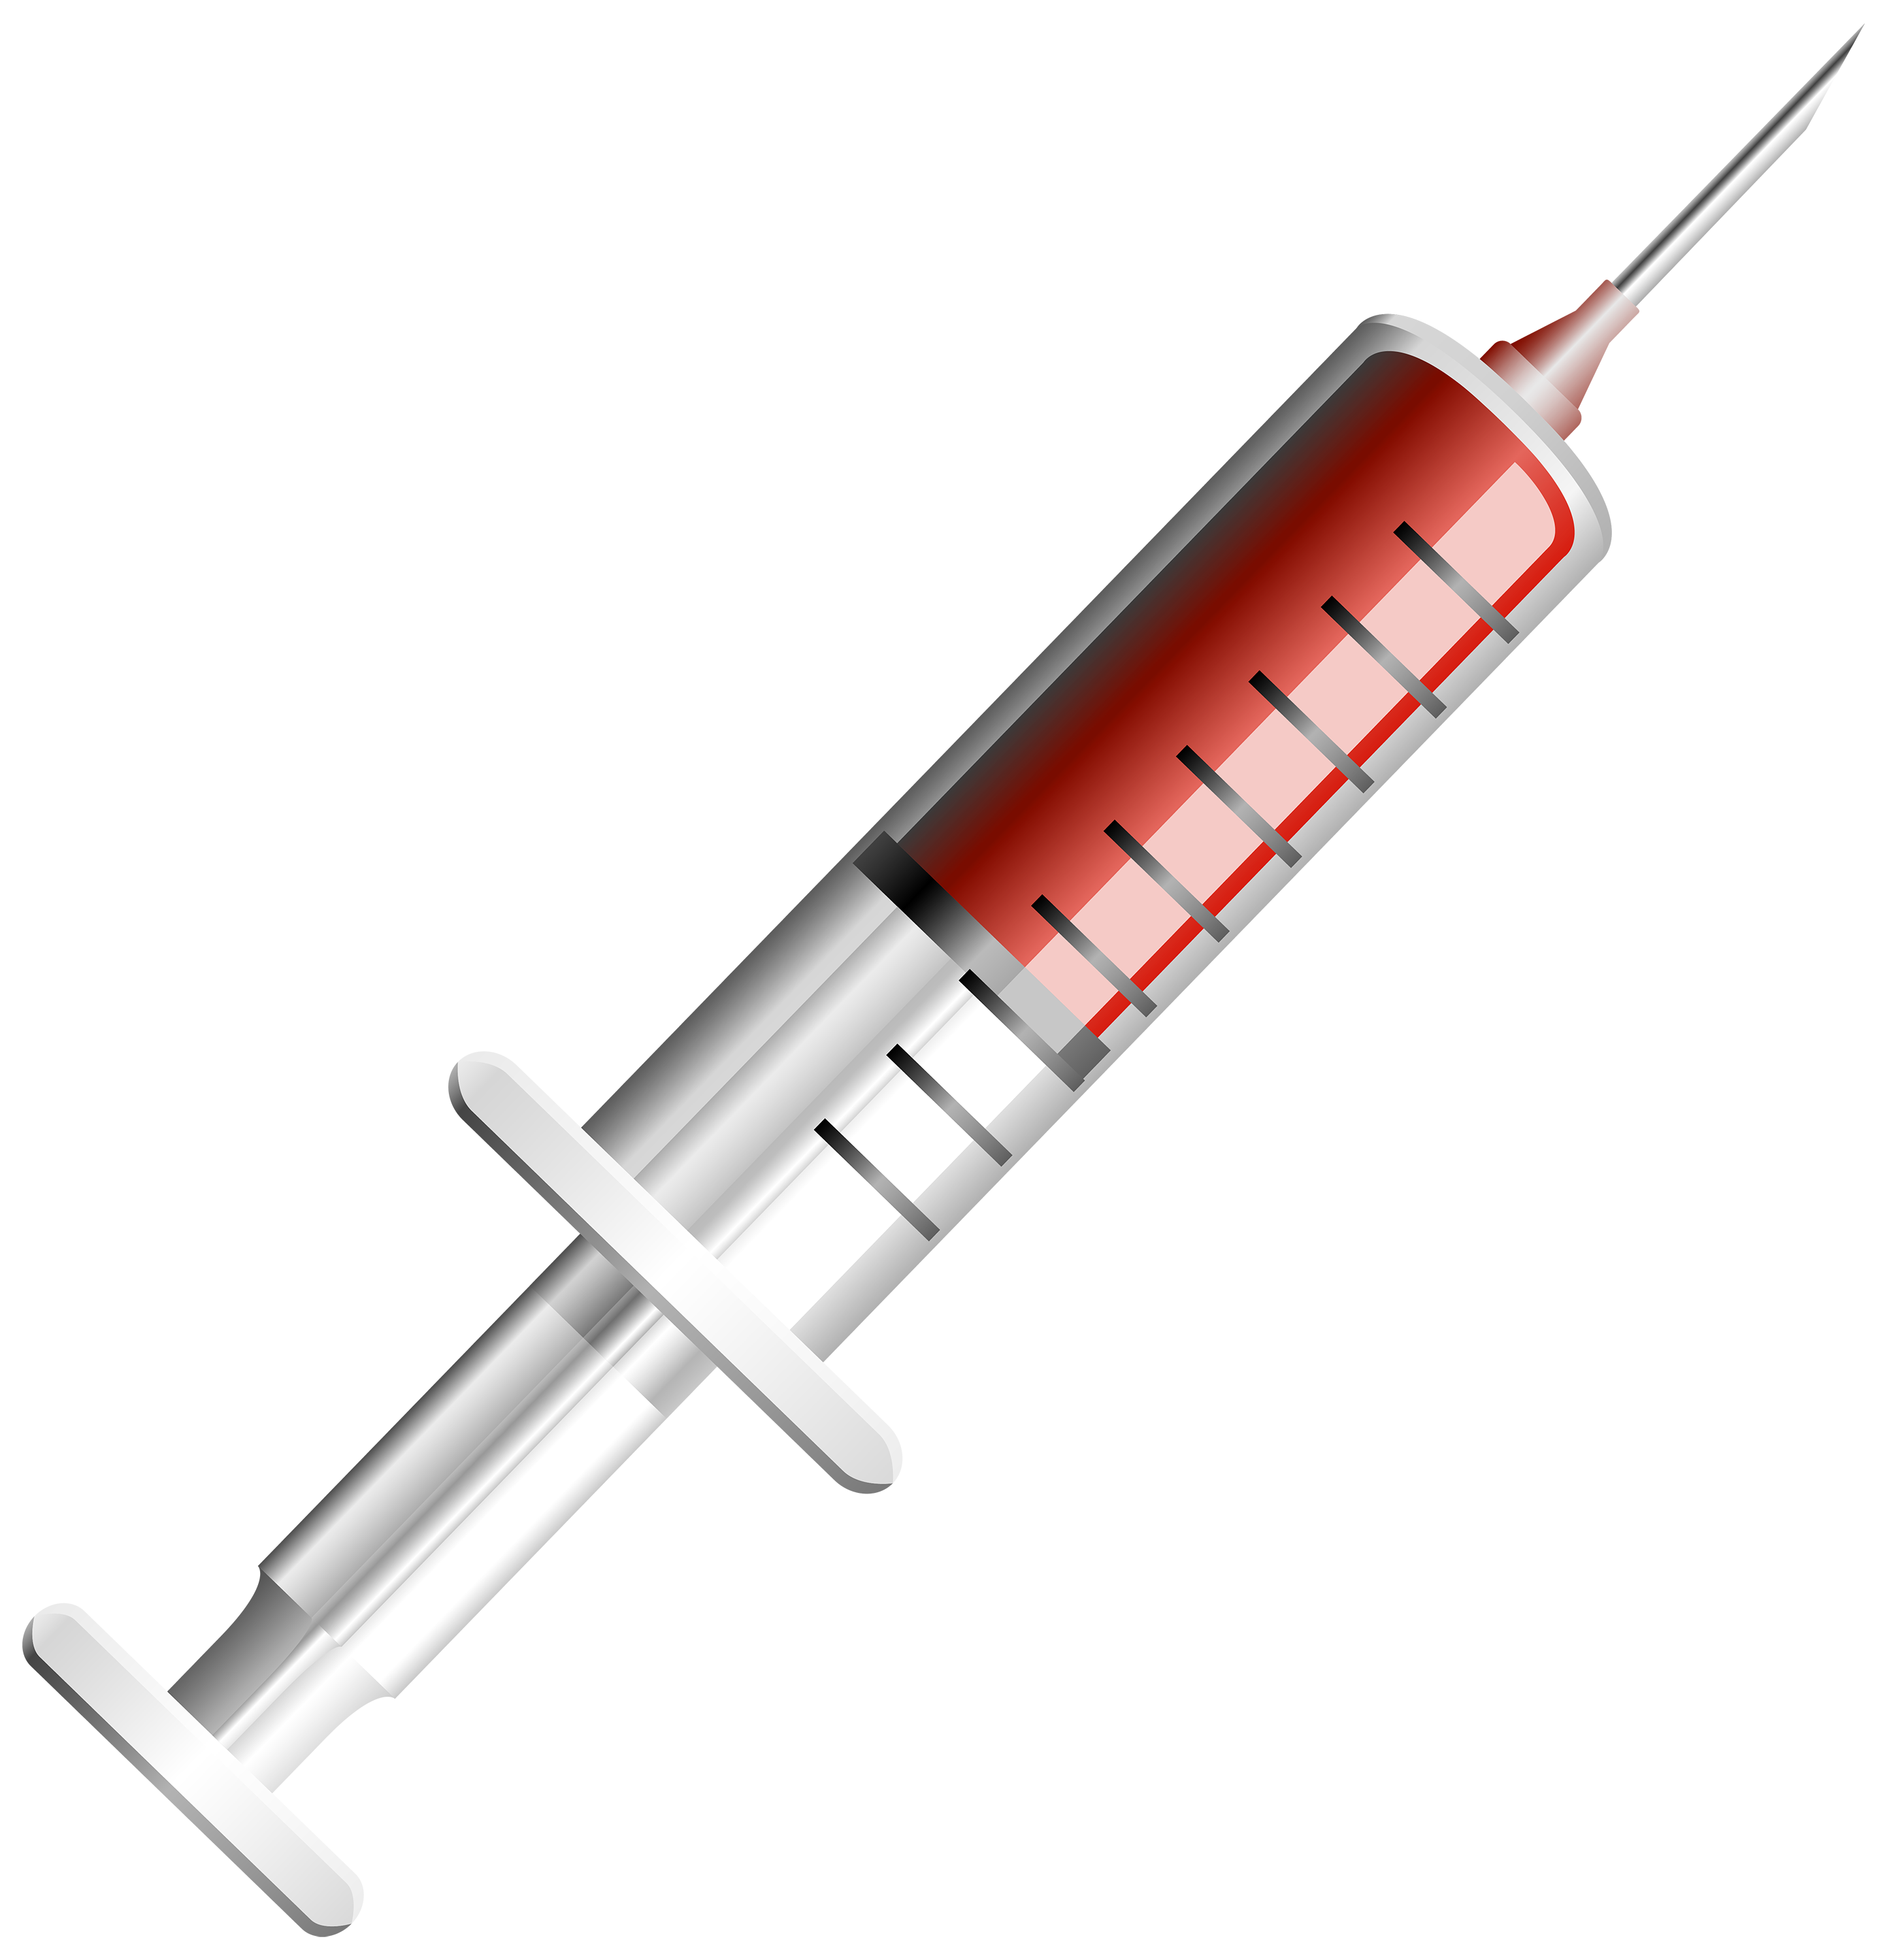 Syringe images download.